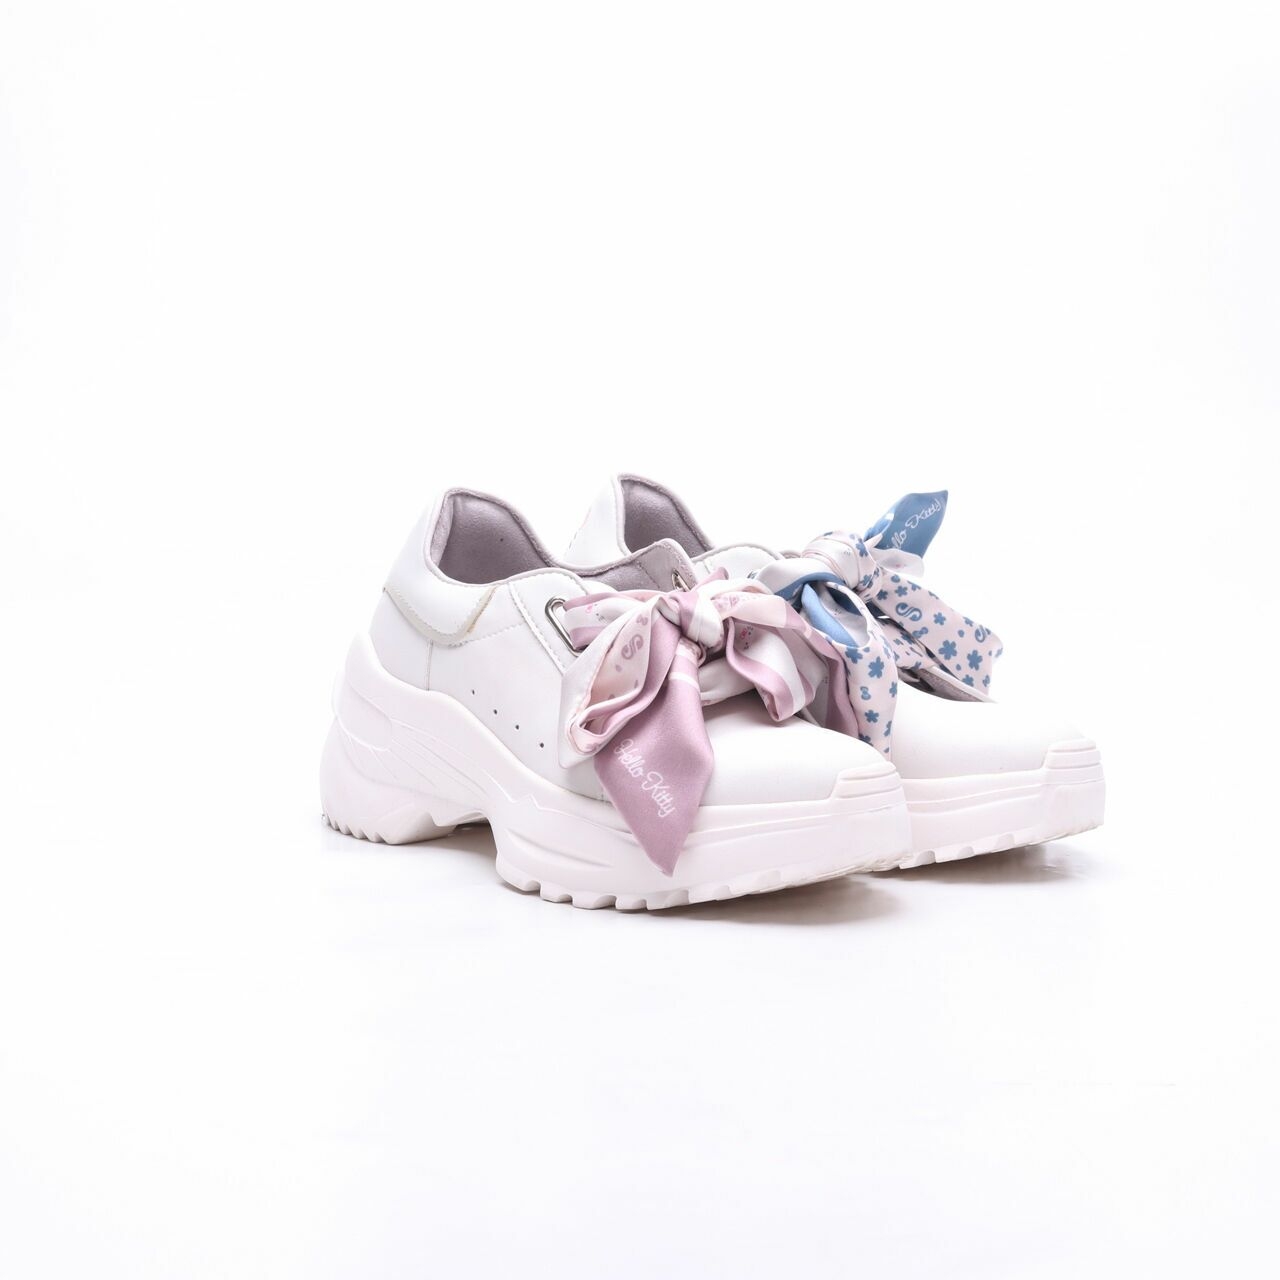 Solesister X Hello Kitty White Sneakers